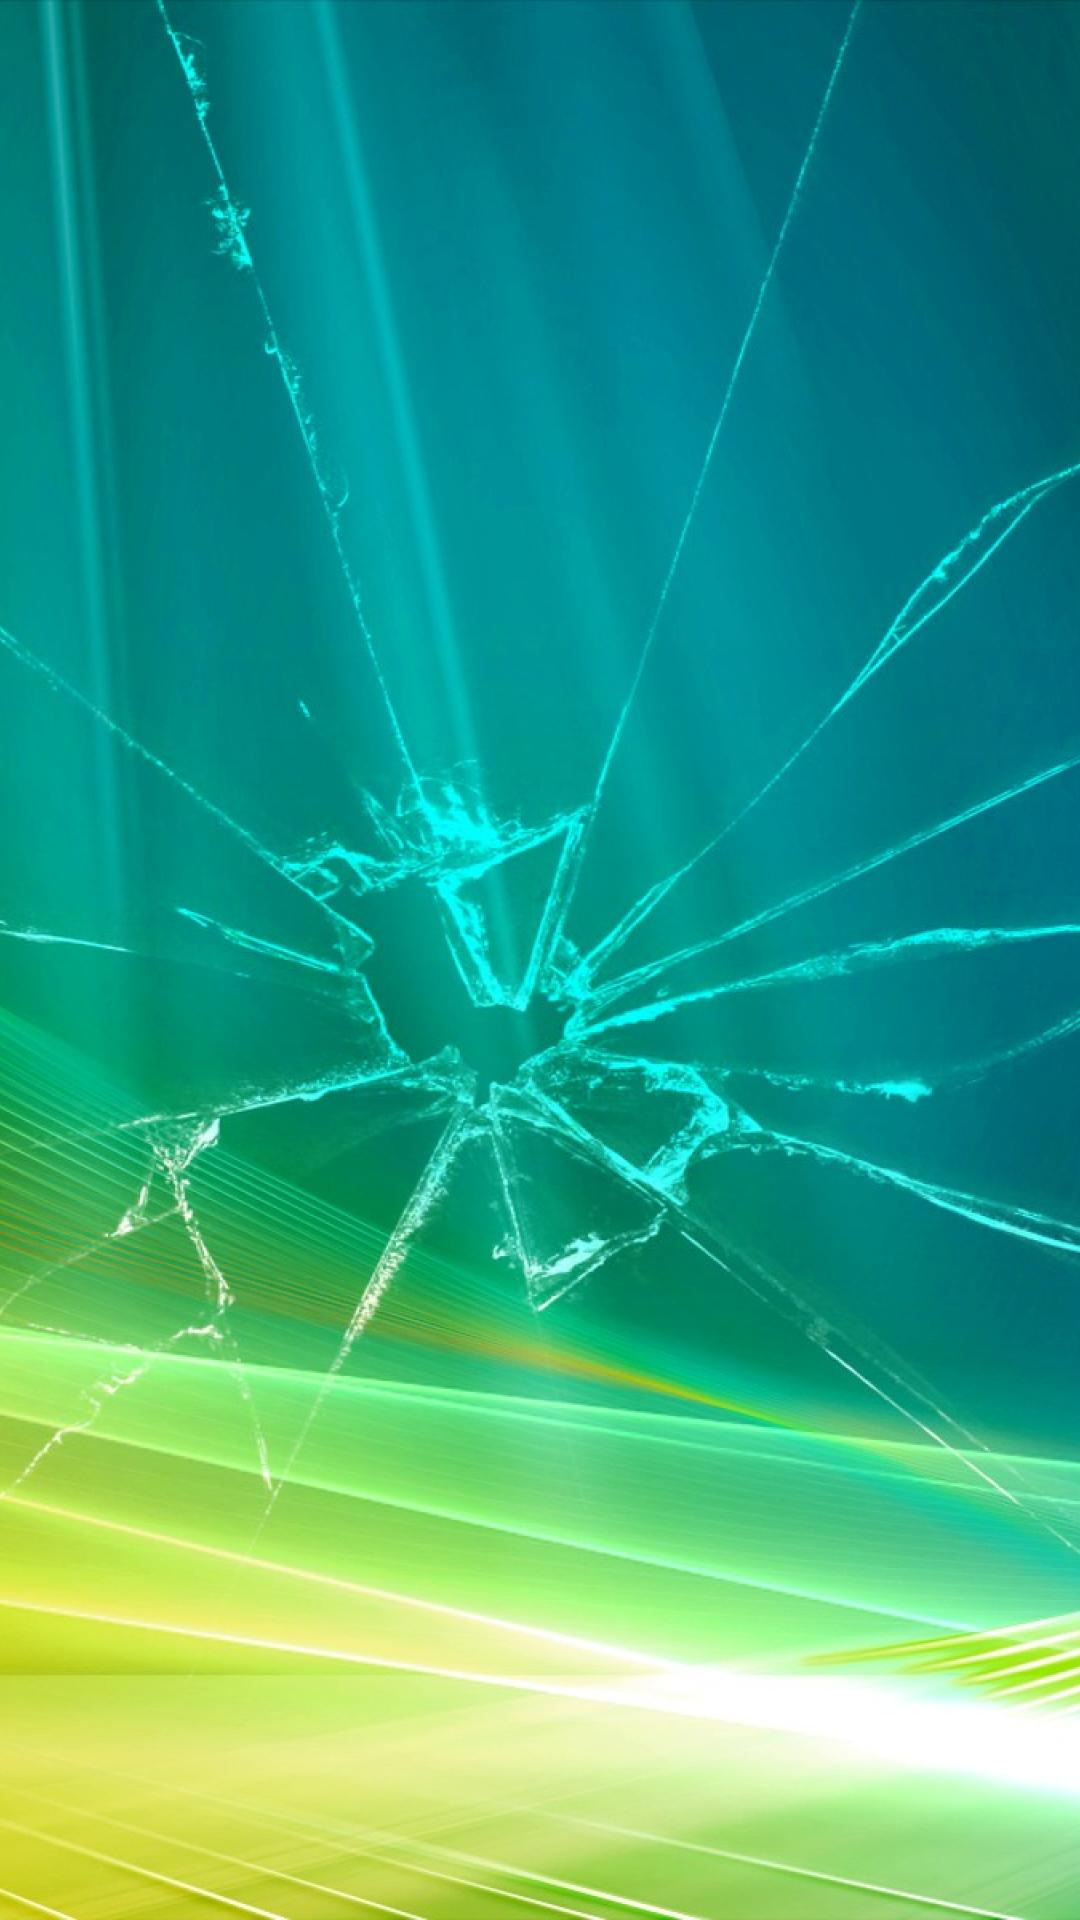 Harnas Clancy Verhuizer Wallpaper on Twitter: "Glass Broken Broken Screen Texture glass broken  broken screen texture The Mobile Wallpapers https://t.co/J9Xc61Oicz  https://t.co/SvHNiaJxOw" / Twitter